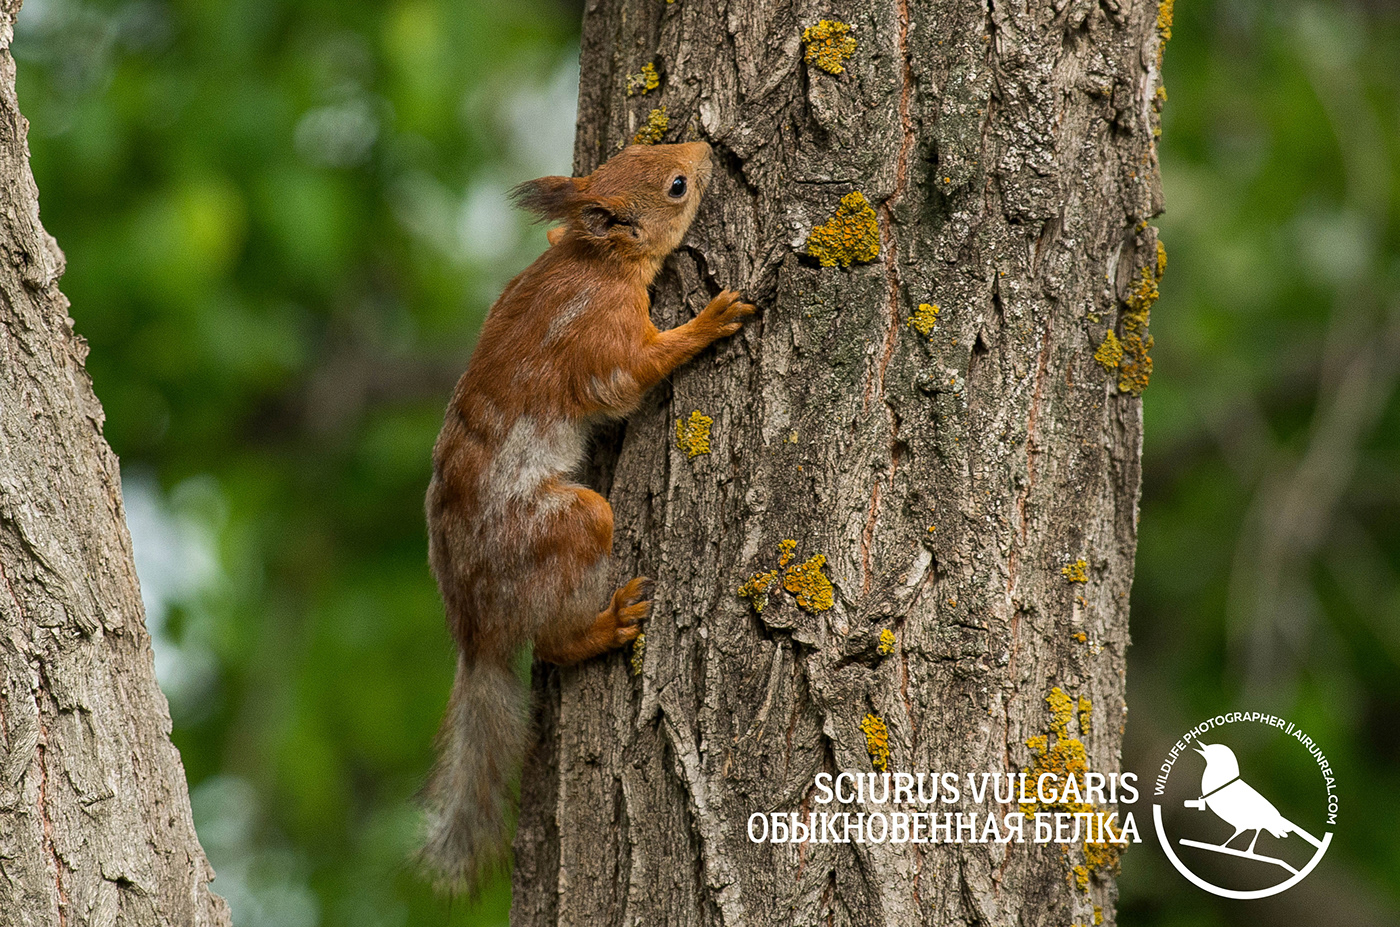 Sciurus vulgaris mammals volgograd Russia wildlife Red Squirrel squirrel